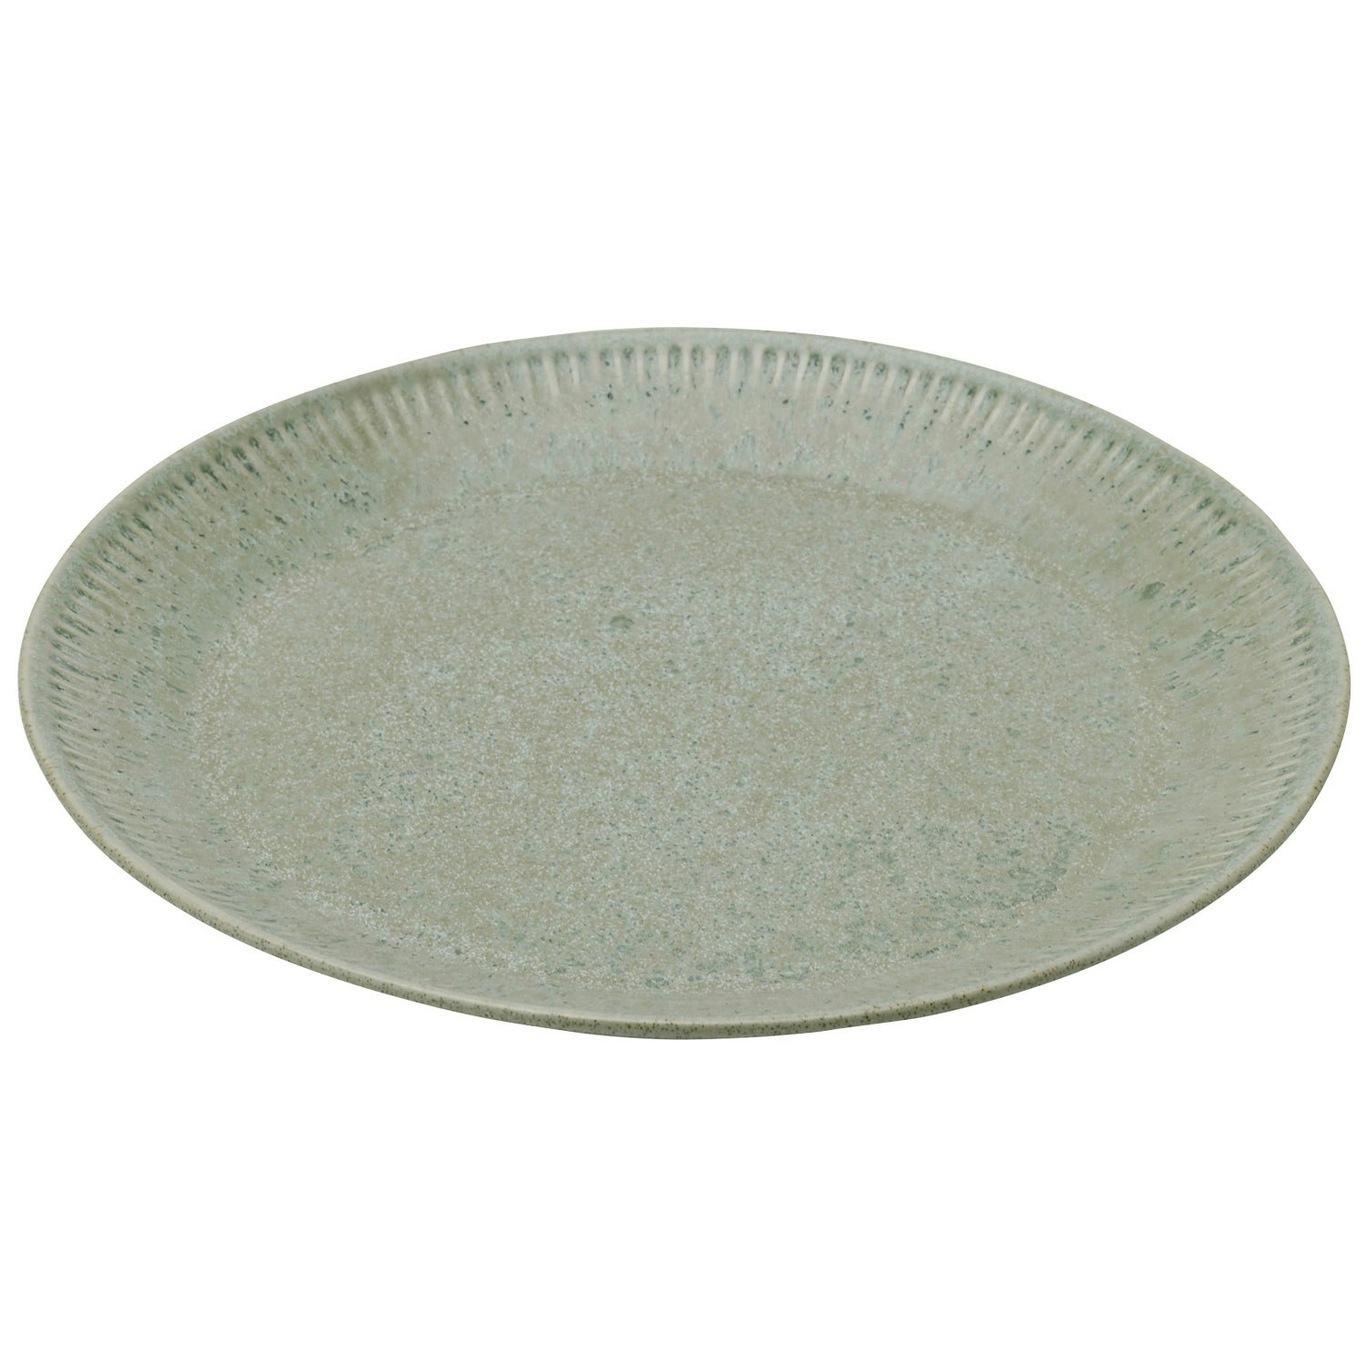 Knabstrup Side Plate 22 cm, Olive